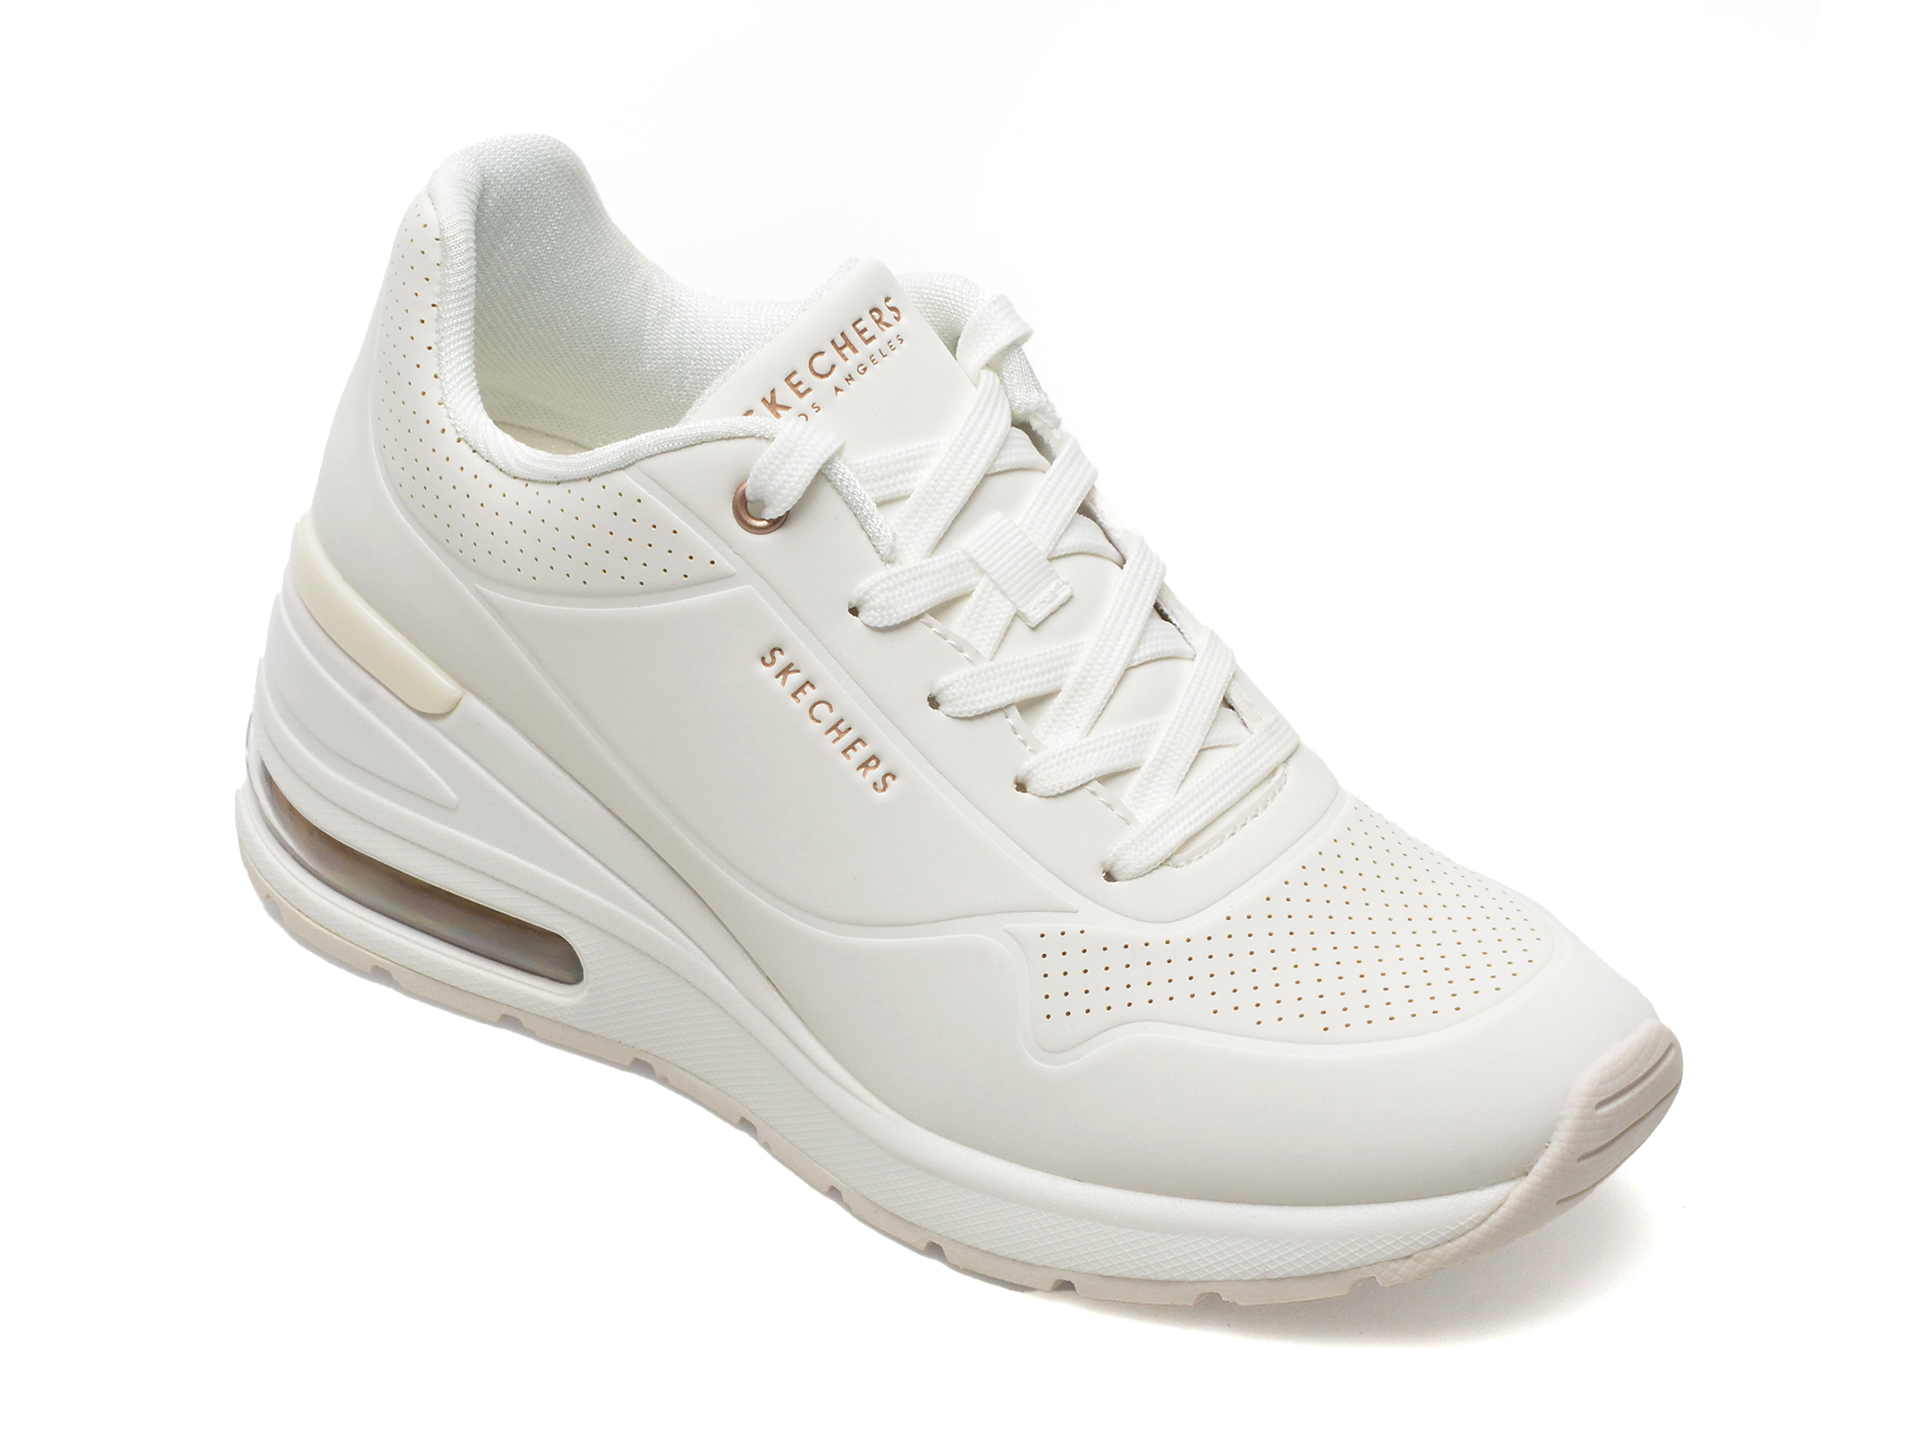 Pantofi SKECHERS albi, MILLION AIR, din piele ecologica Answear 2023-05-30